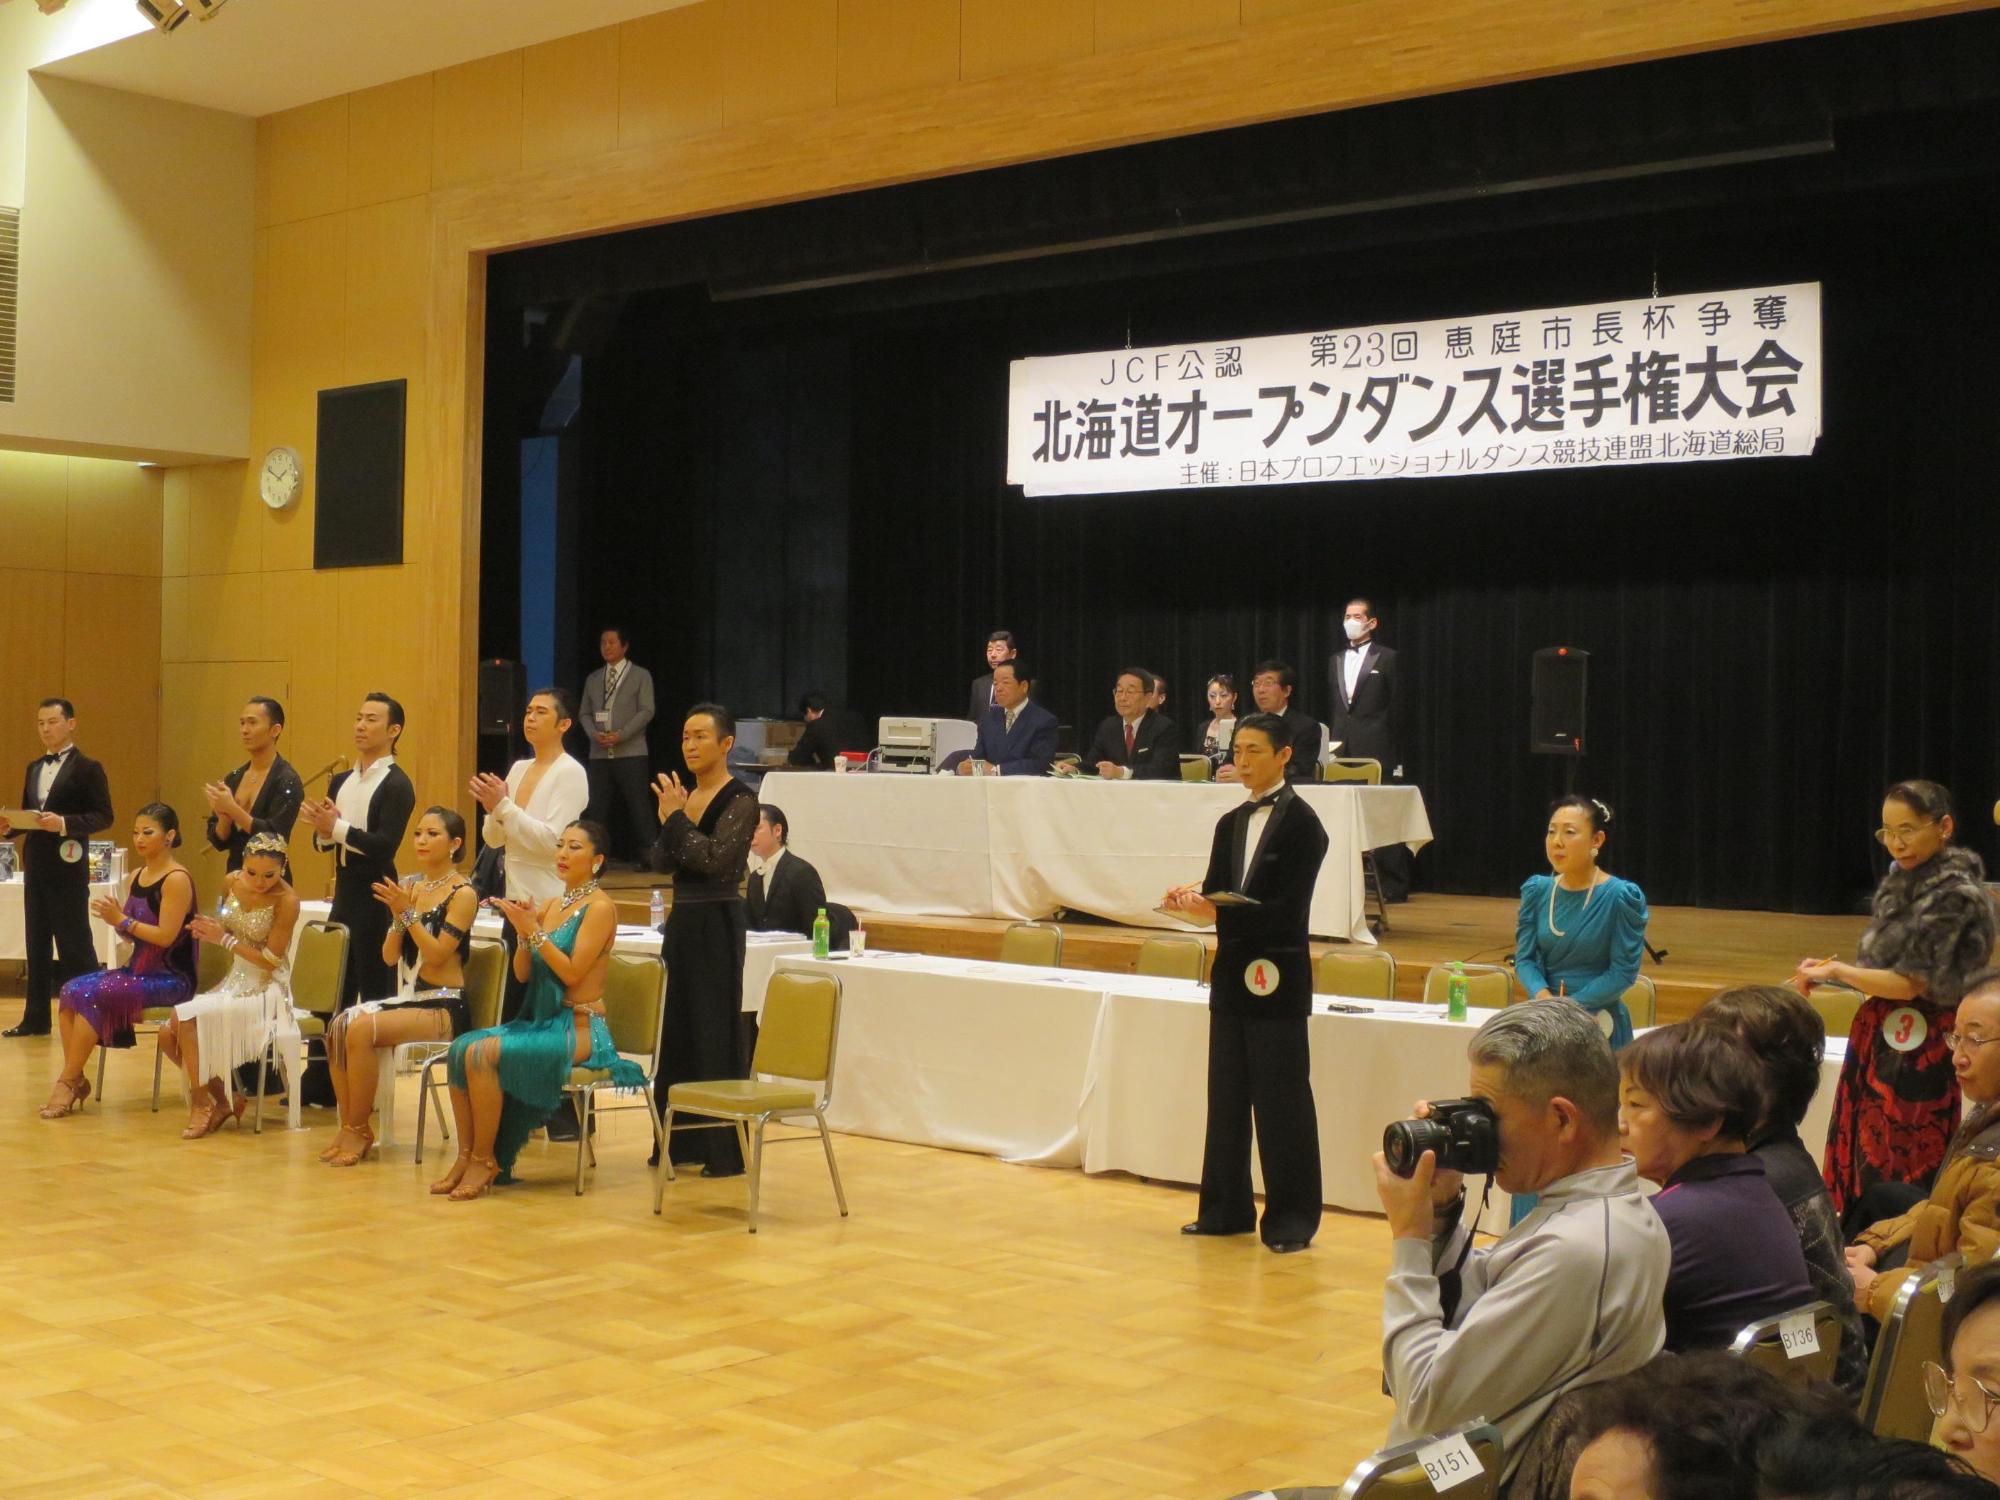 「北海道オープンダンス選手権大会」が開催されている写真